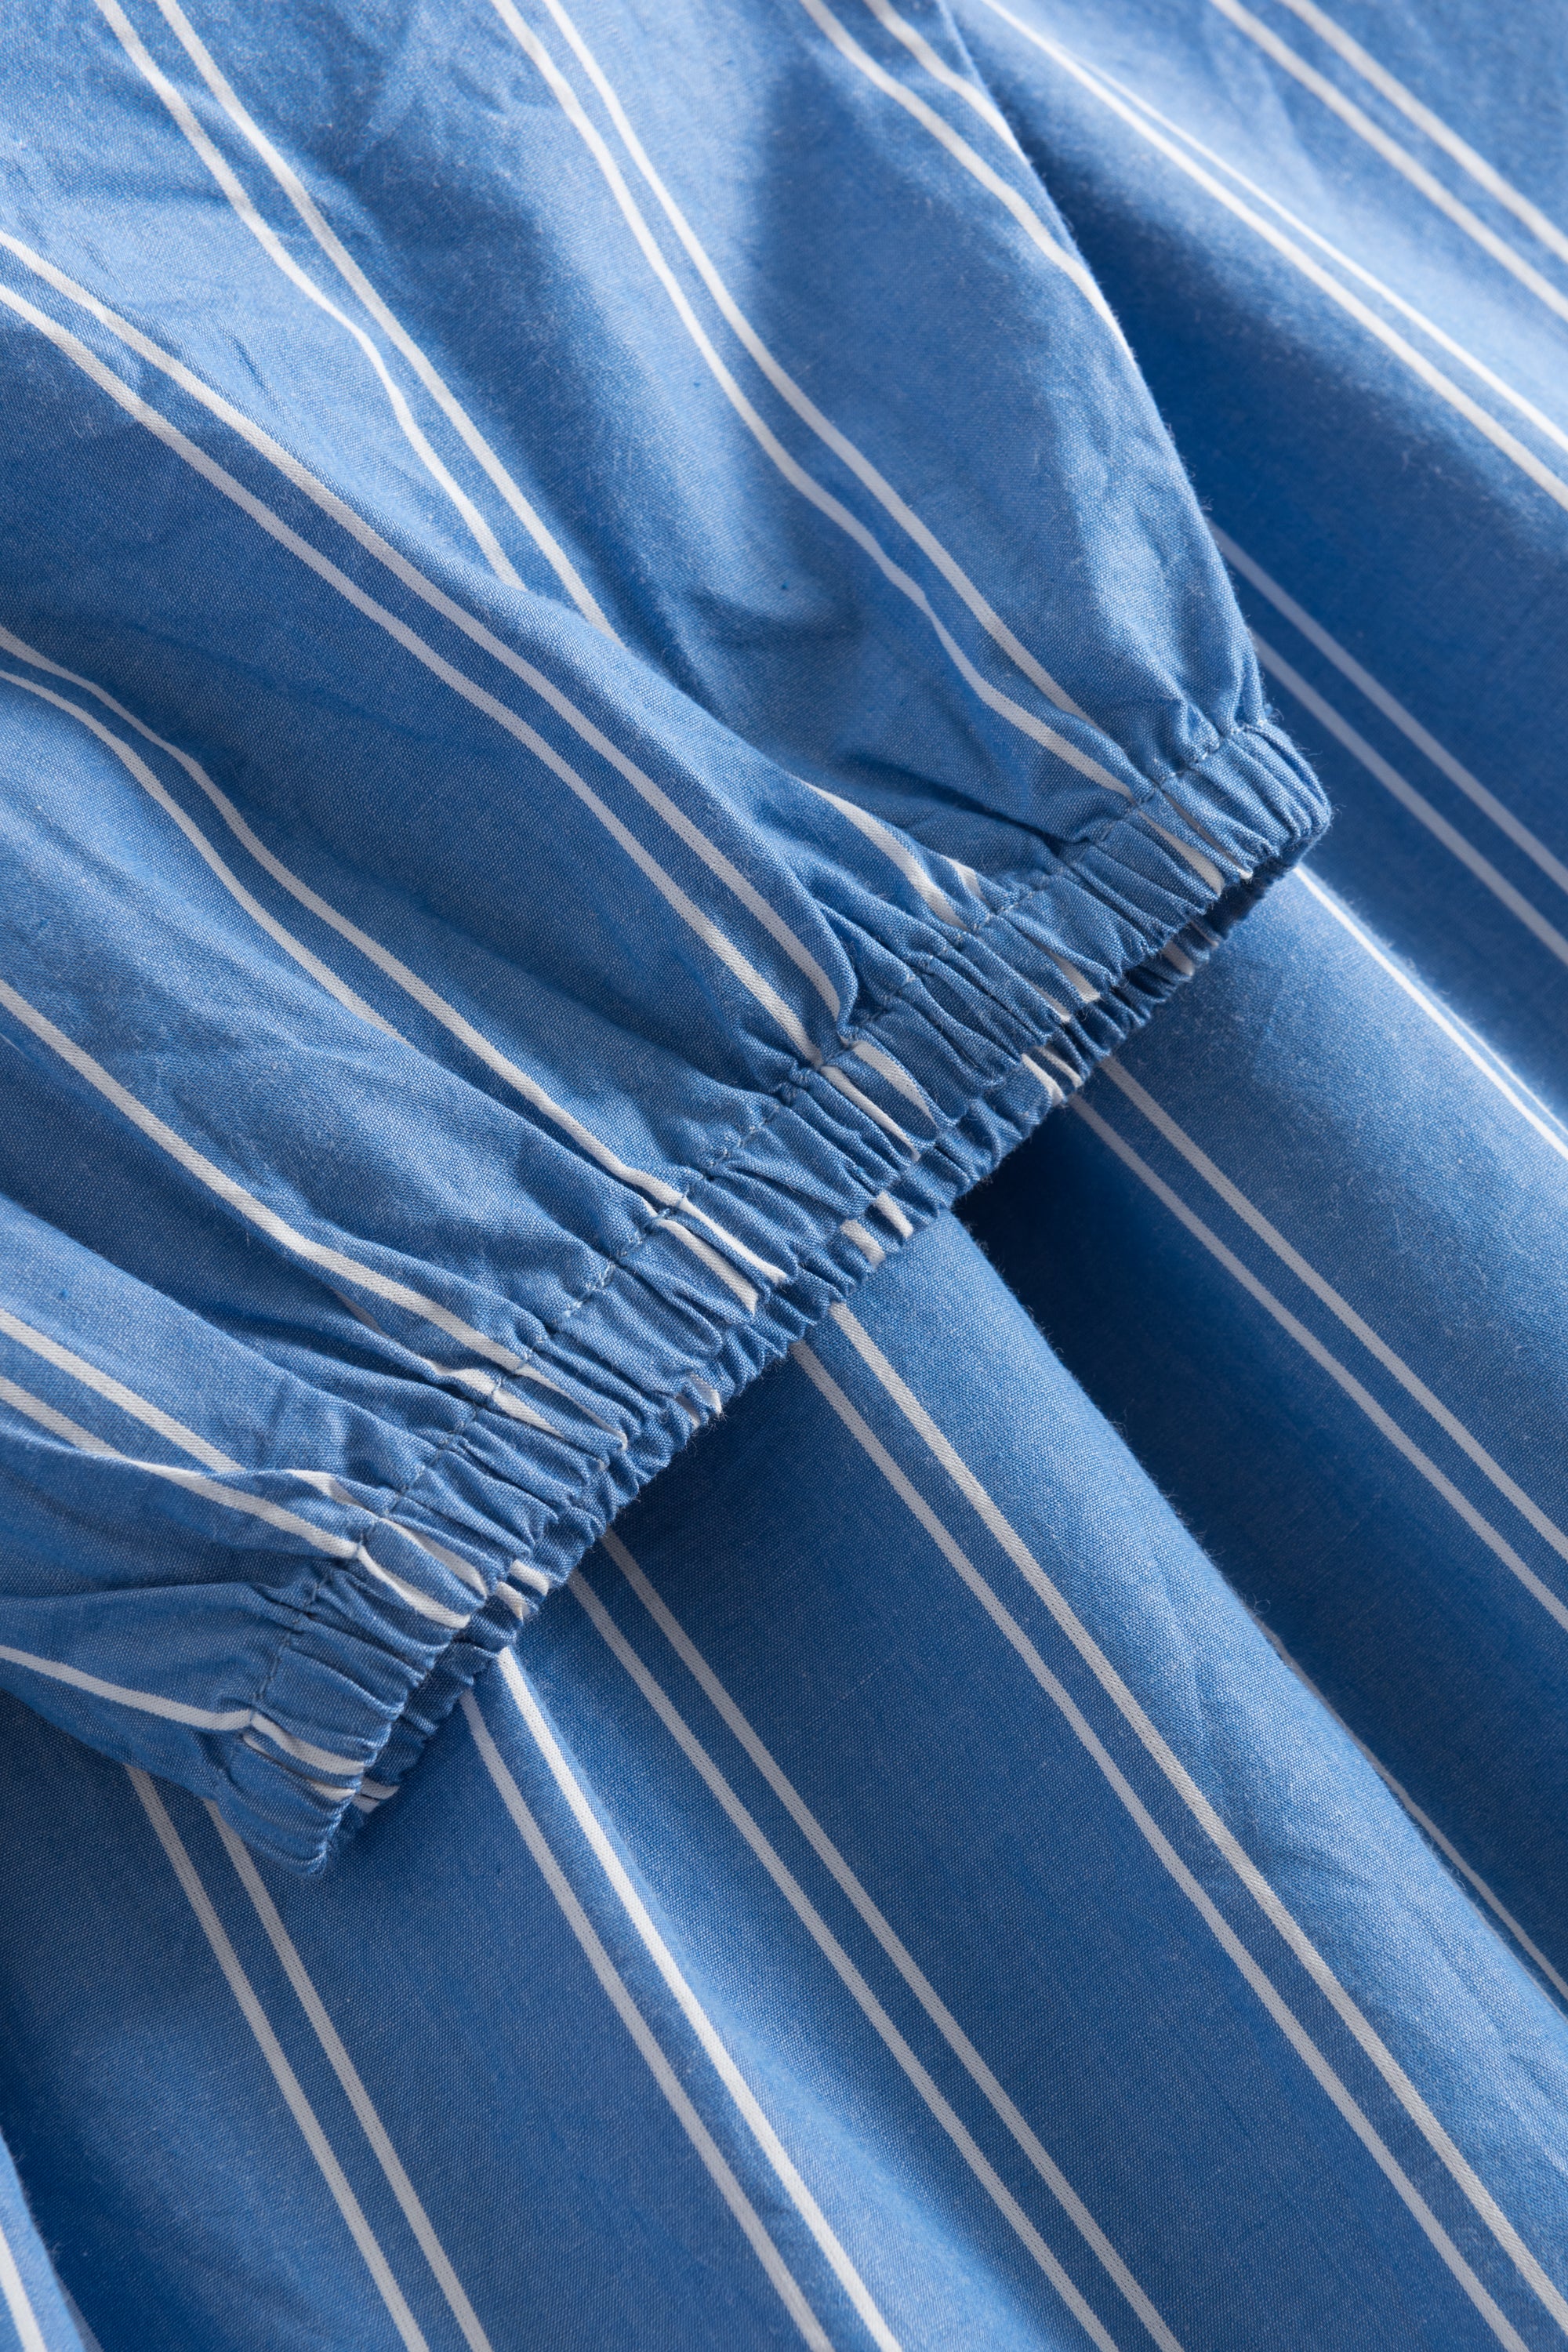 Nué Notes Sola Dress - Blue Stripe DRESSES 494 BLUE STRIPE